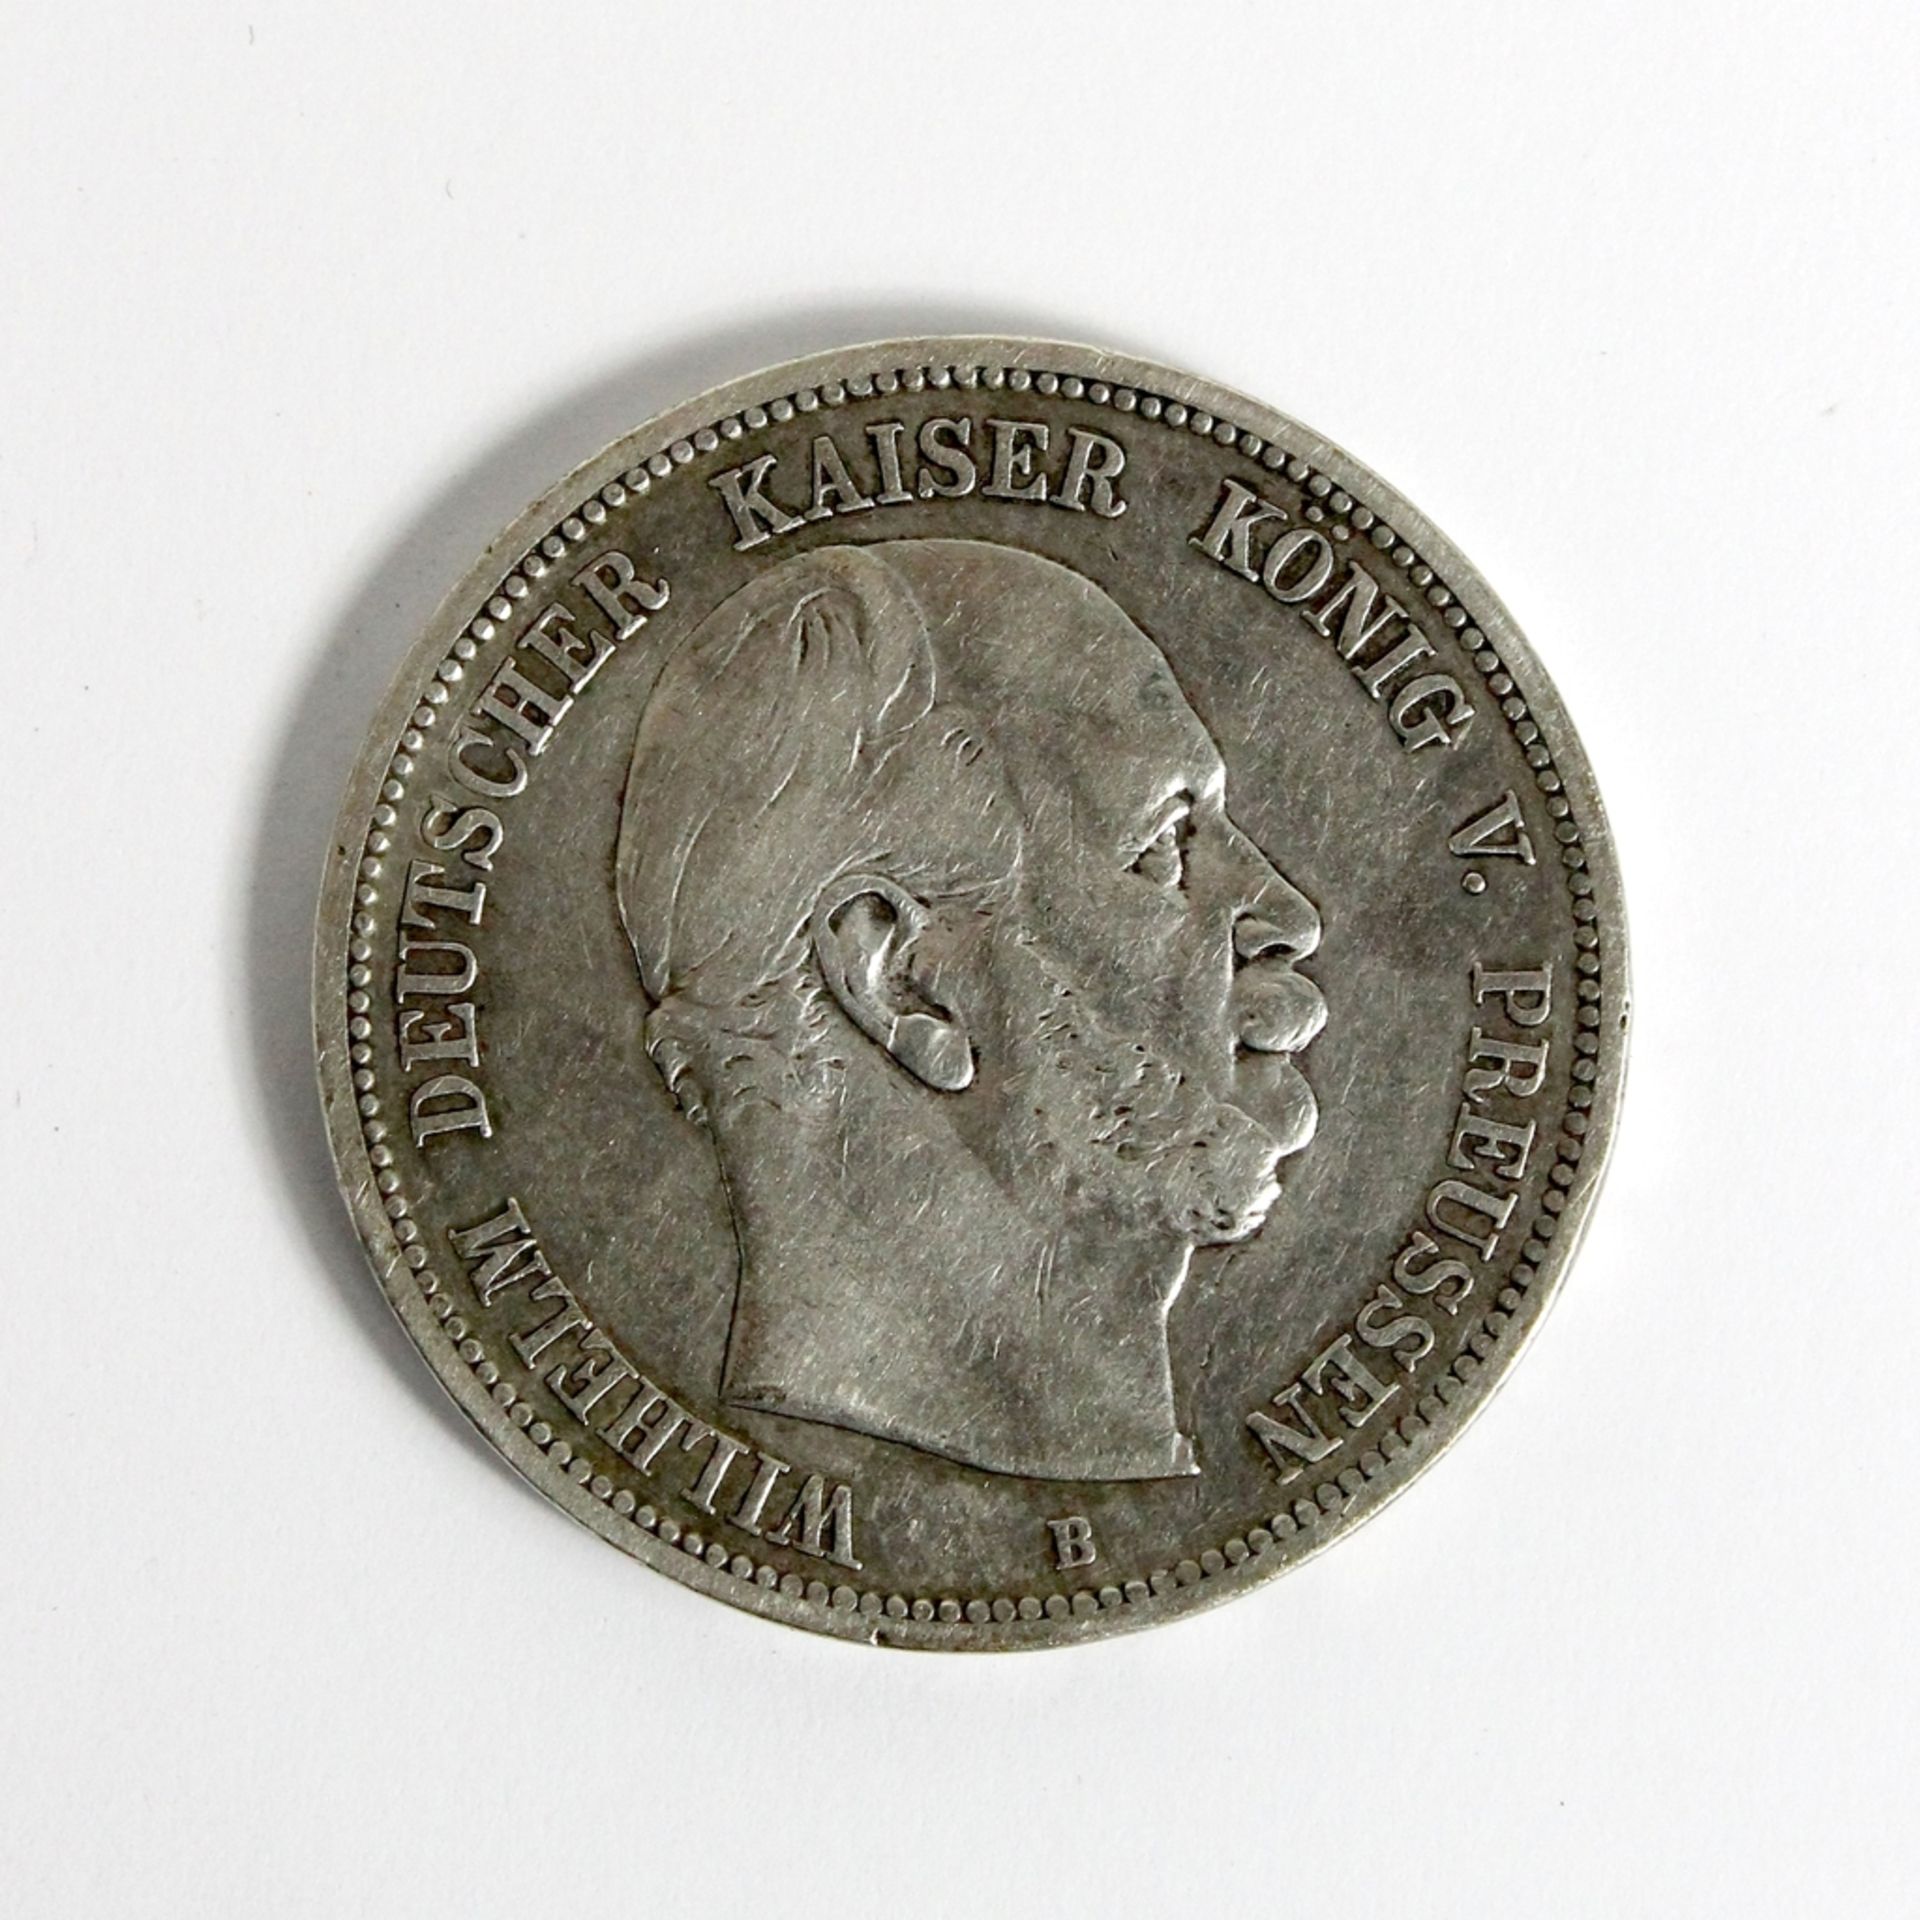 5 Reichsmark " König von Preußen "